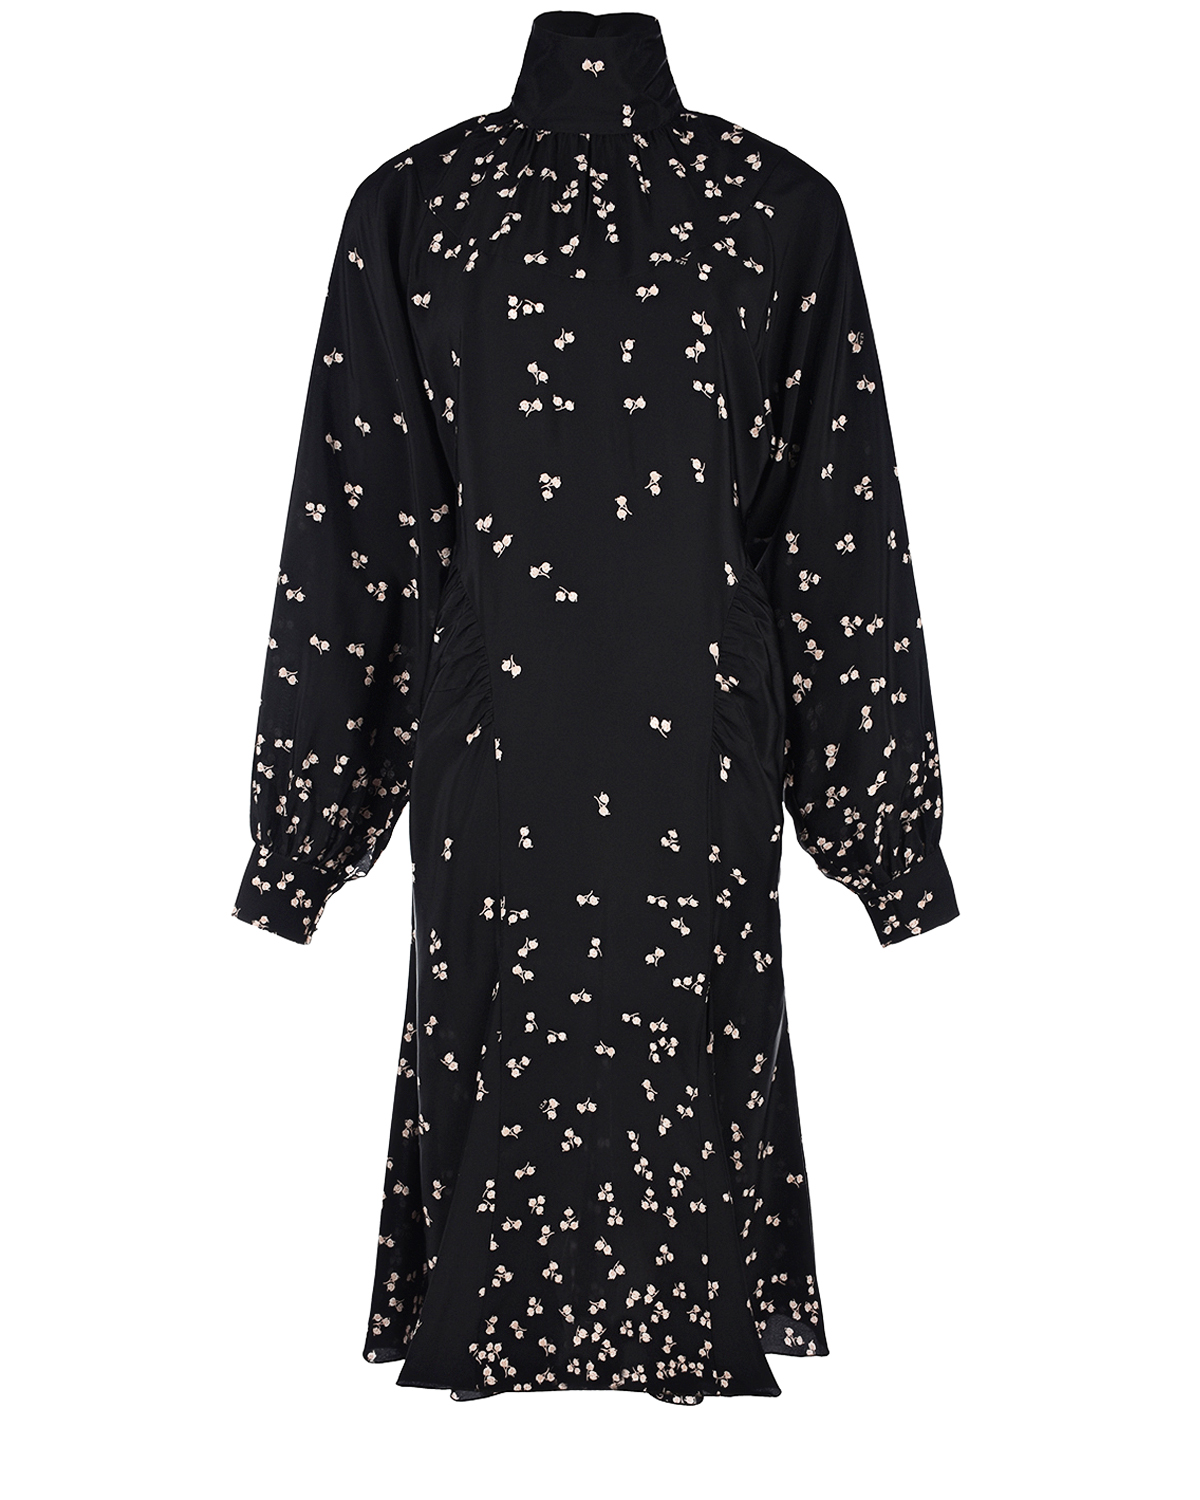 Черное платье с принтом "ландыши" No. 21, размер 40, цвет черный - фото 1